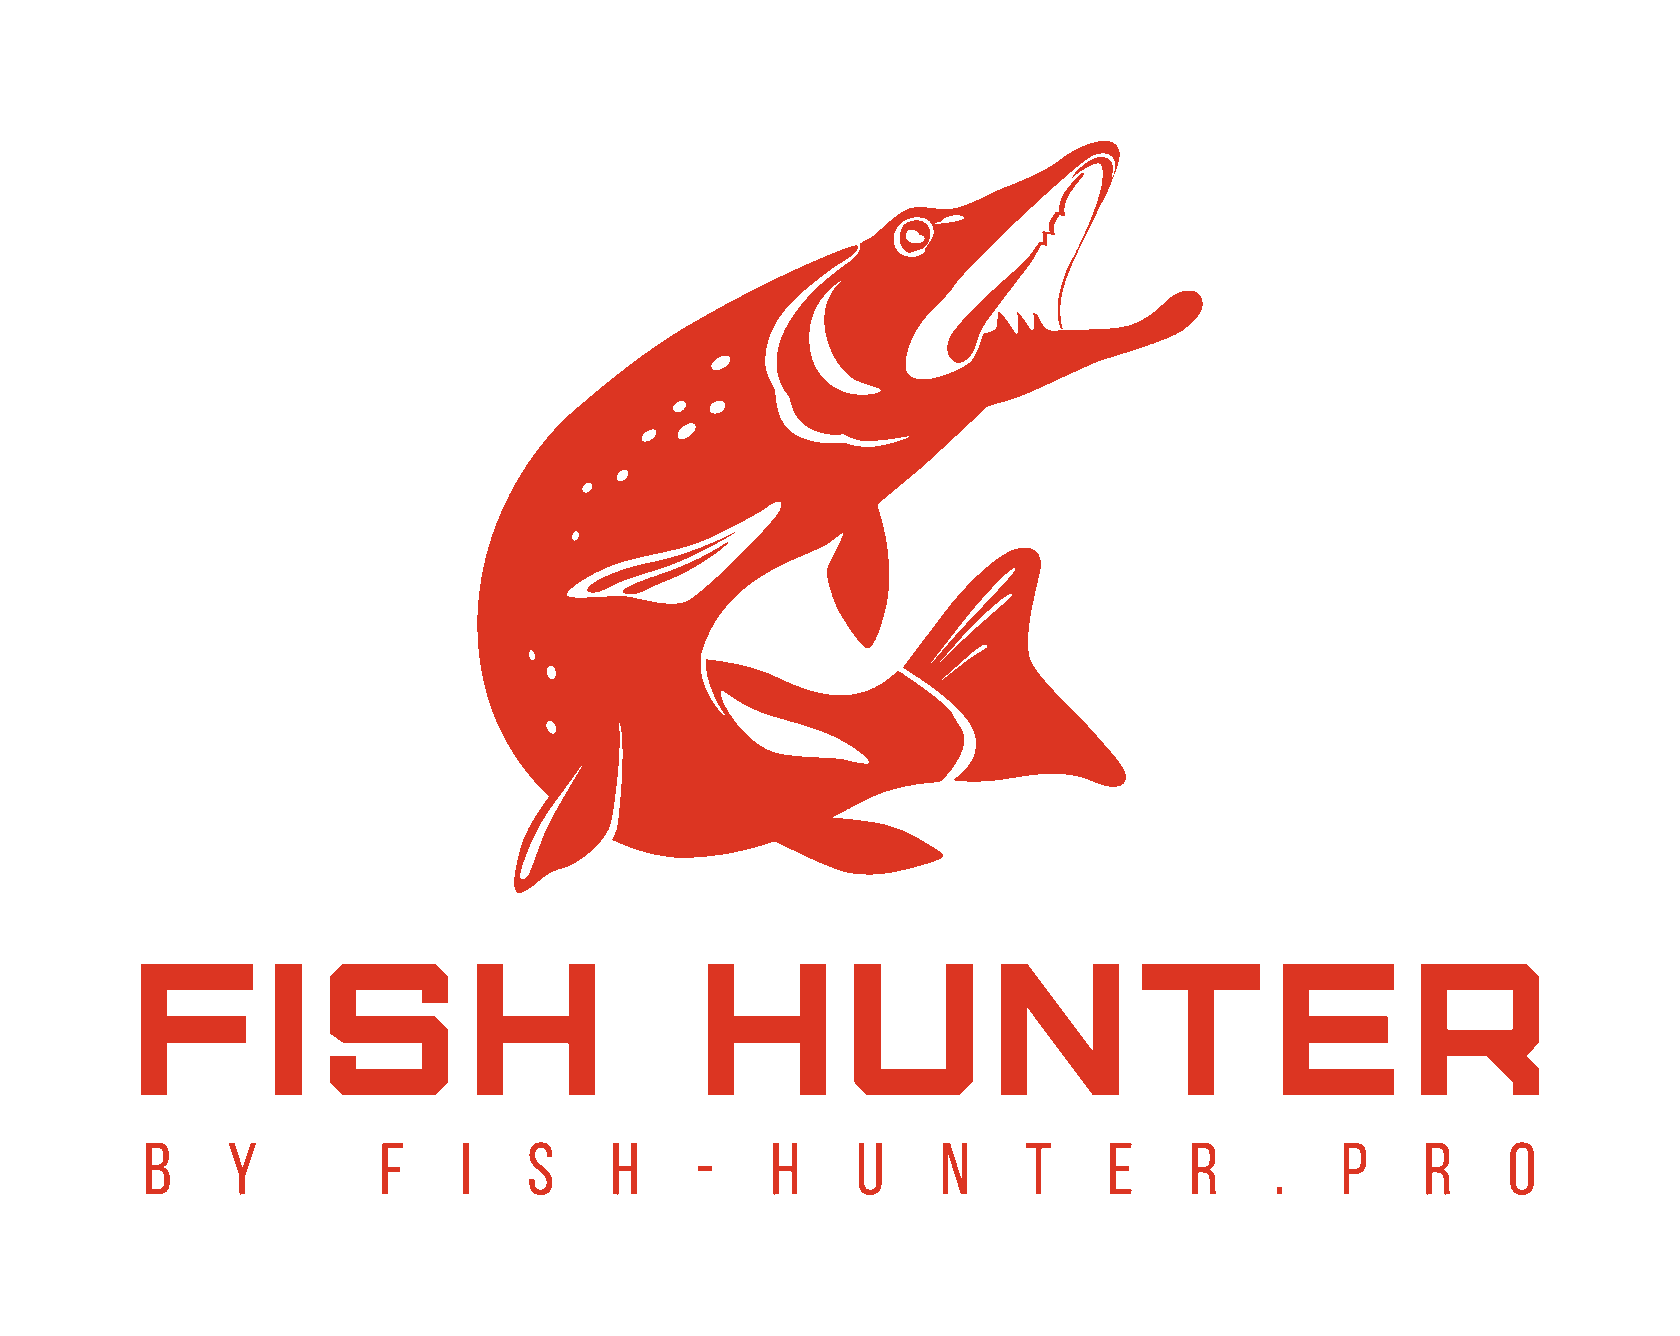 Fish Hunter Pro